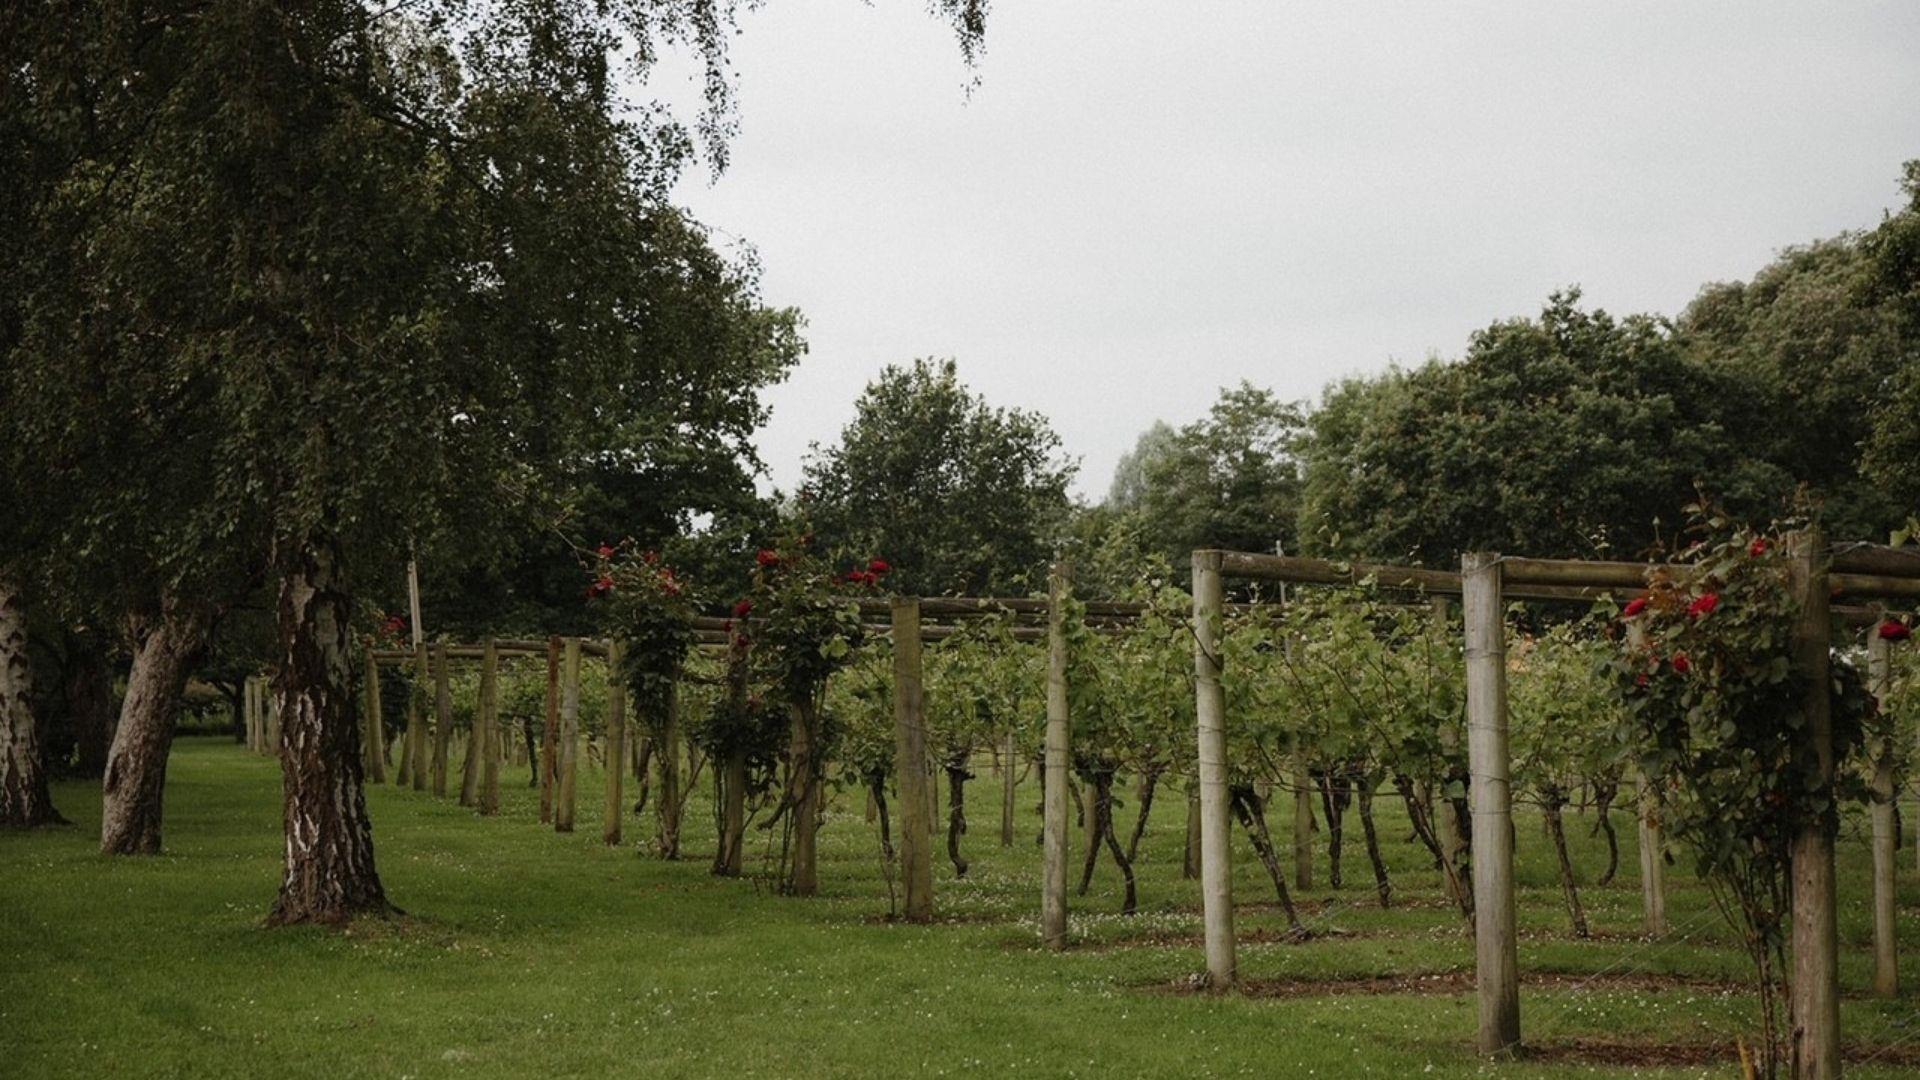 Vines in a vineyard in Twyford, Berkshire.